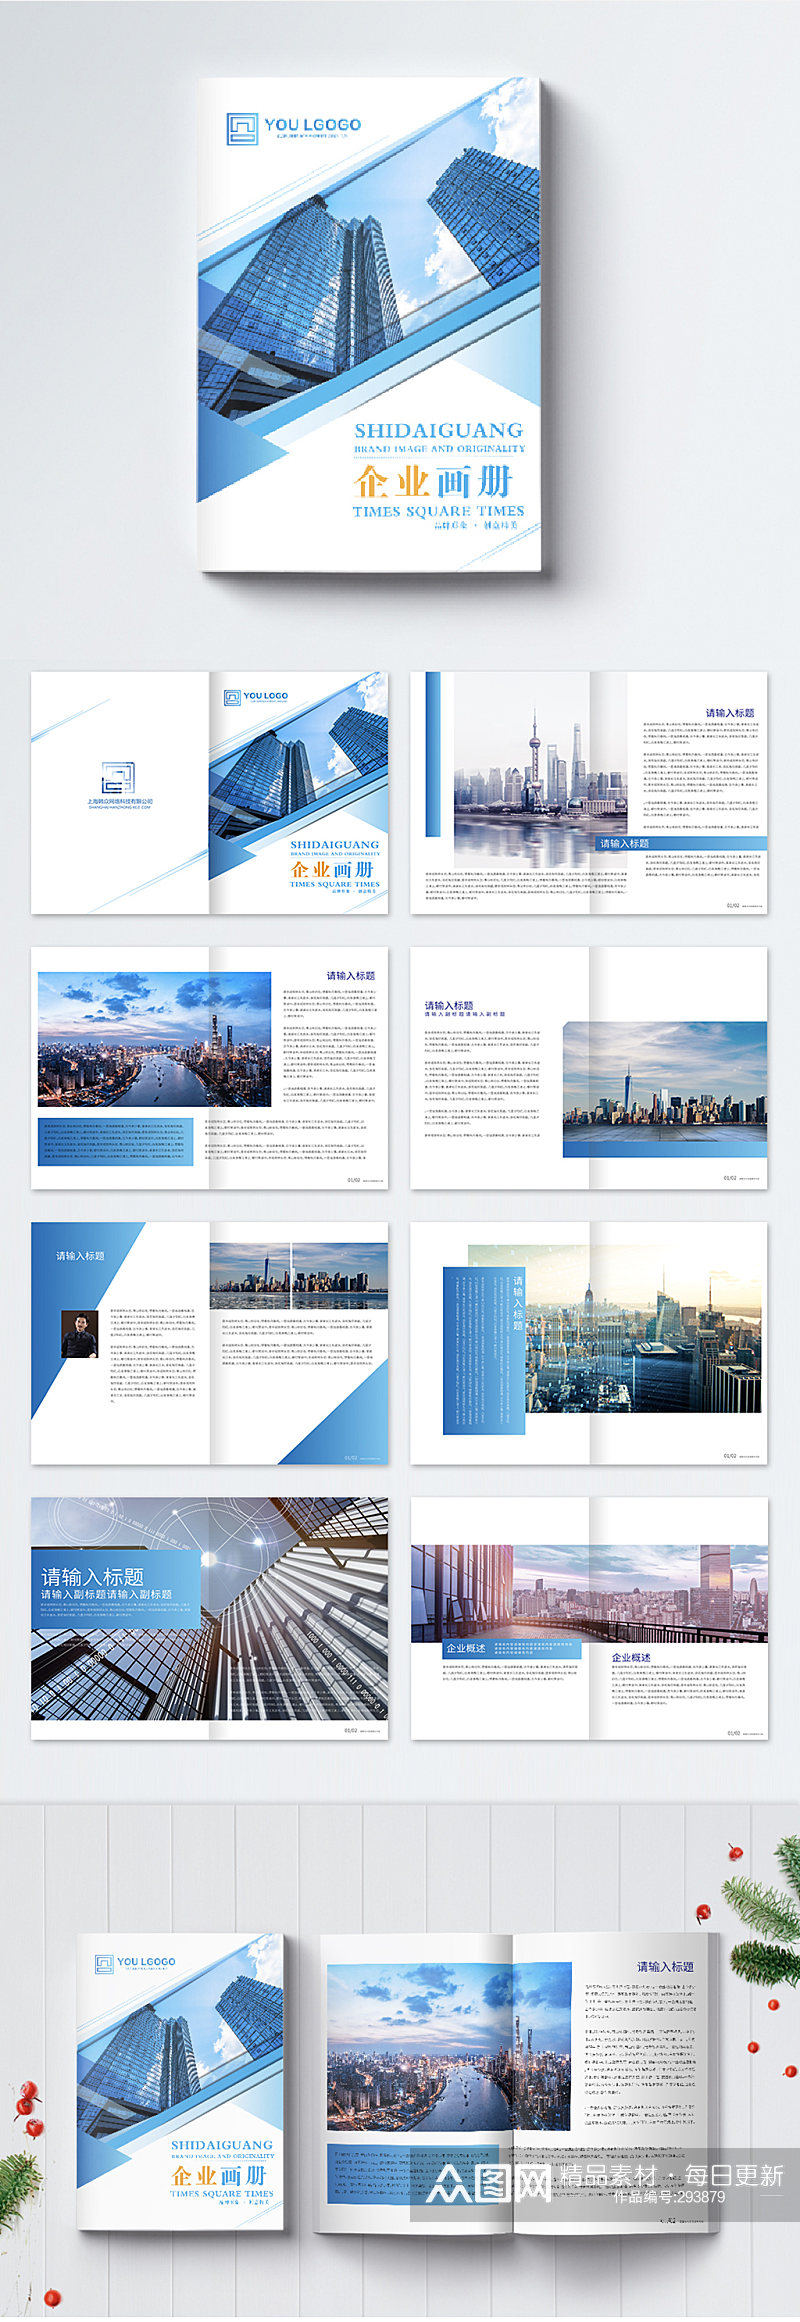 蓝色简约大气企业画册整套设计素材